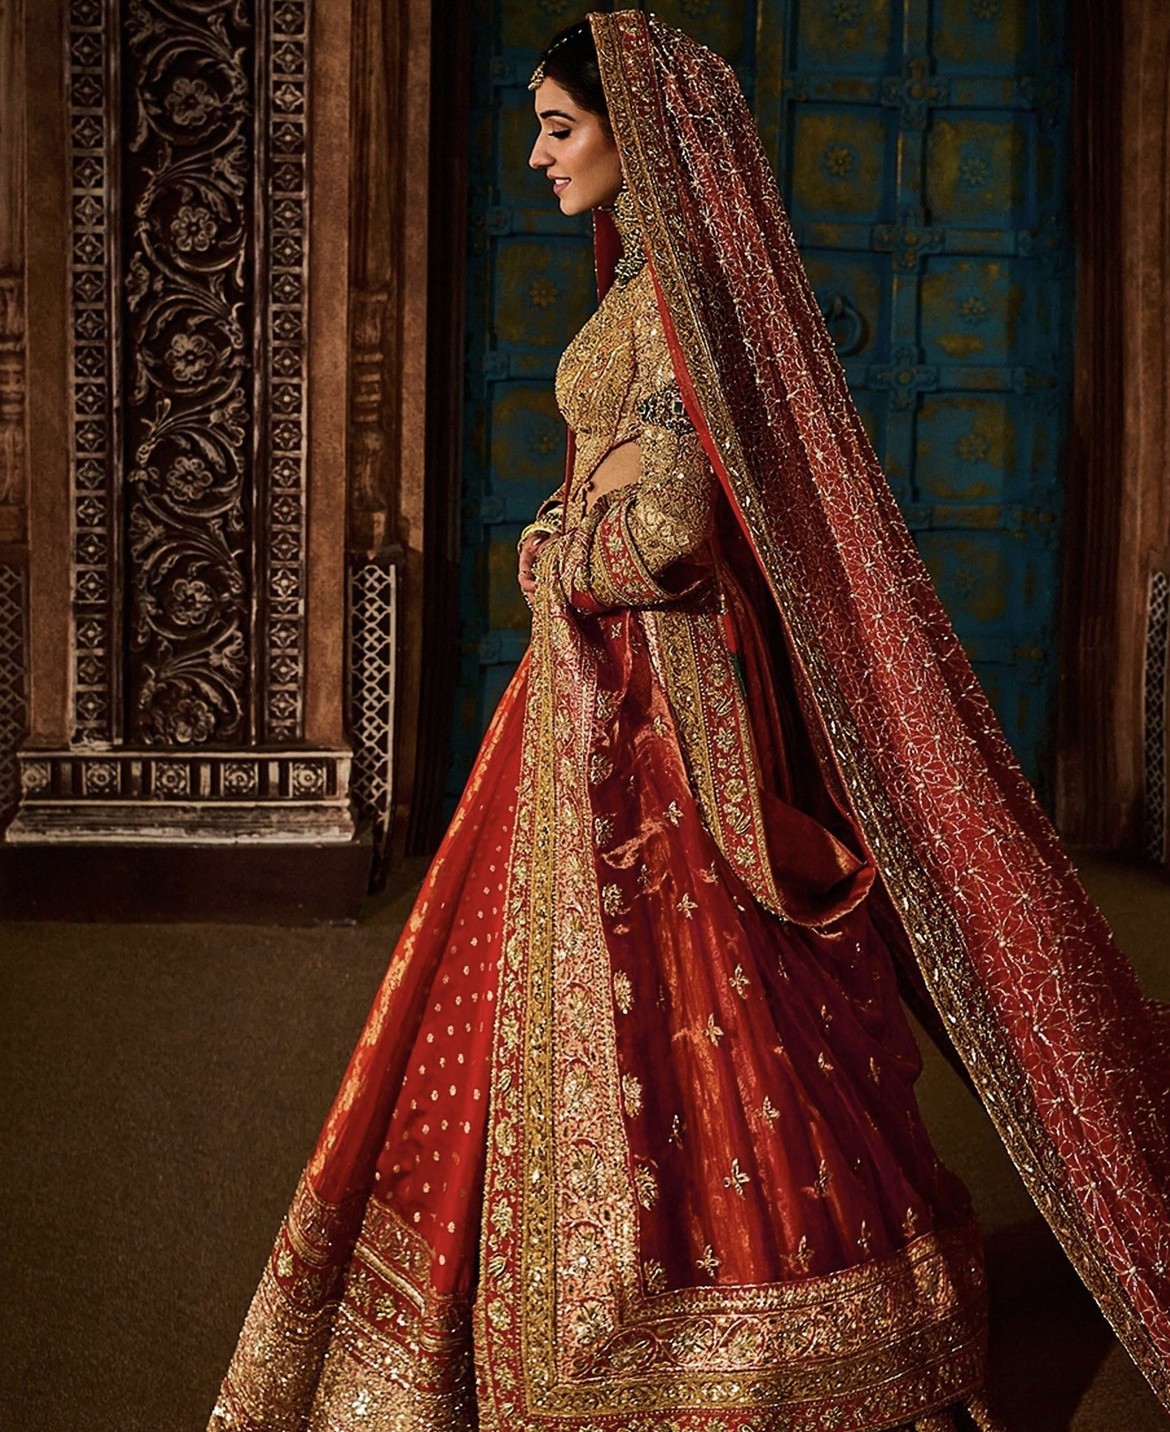 Cô dâu Radhika Merchant xuất hiện như nàng công chúa, được Vogue đánh giá có khoảnh khắc thời trang đẹp nhất tuần qua.